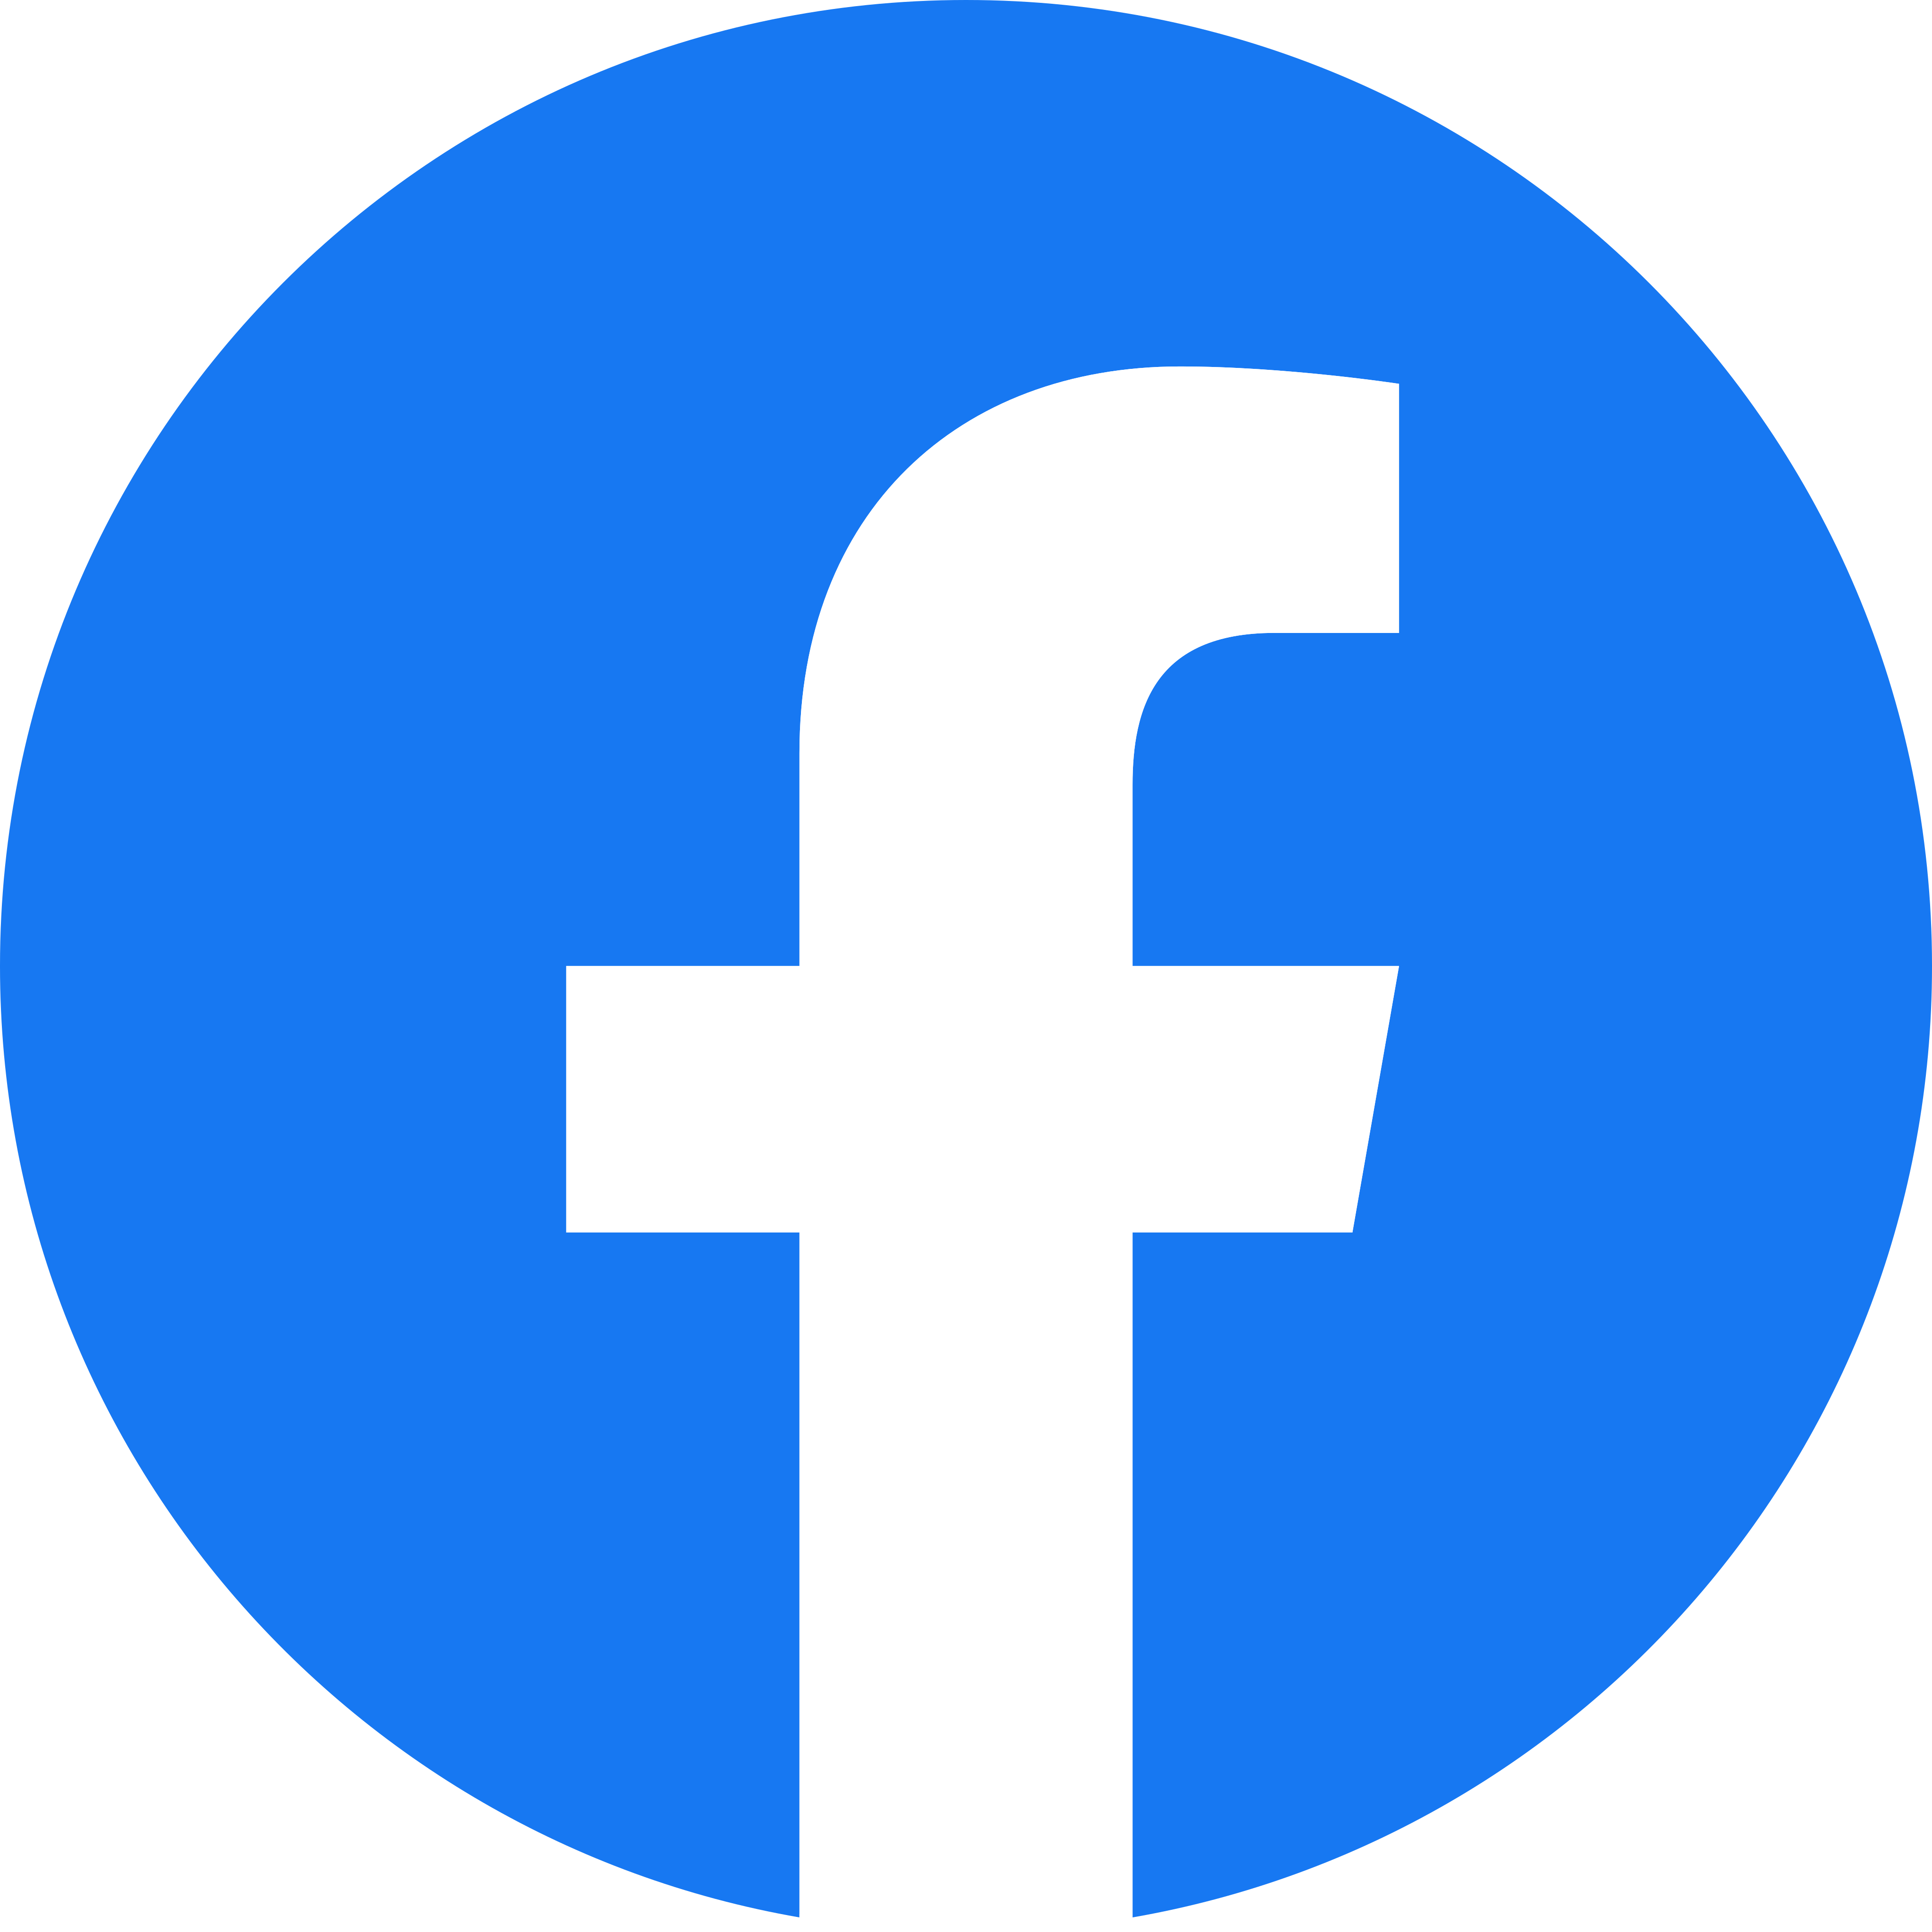 facebook-logo-1-2